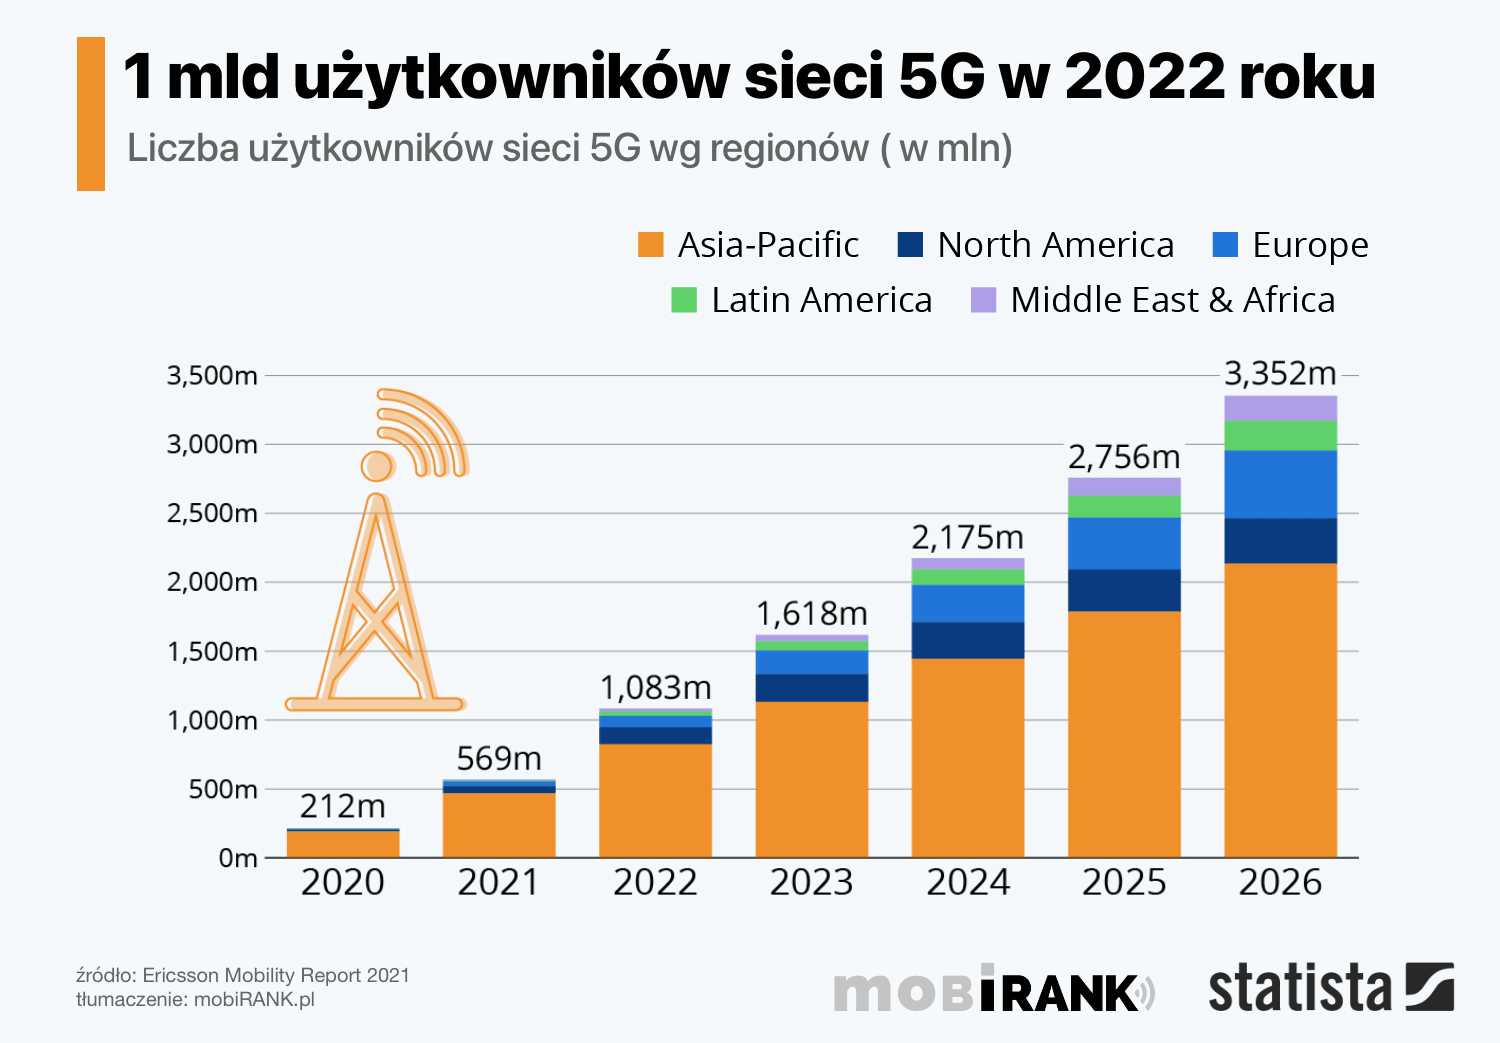 Liczba użytkowników sieci 5G w latach 2020-2026 - estymacja (Ericsson Mobility Report 2021)